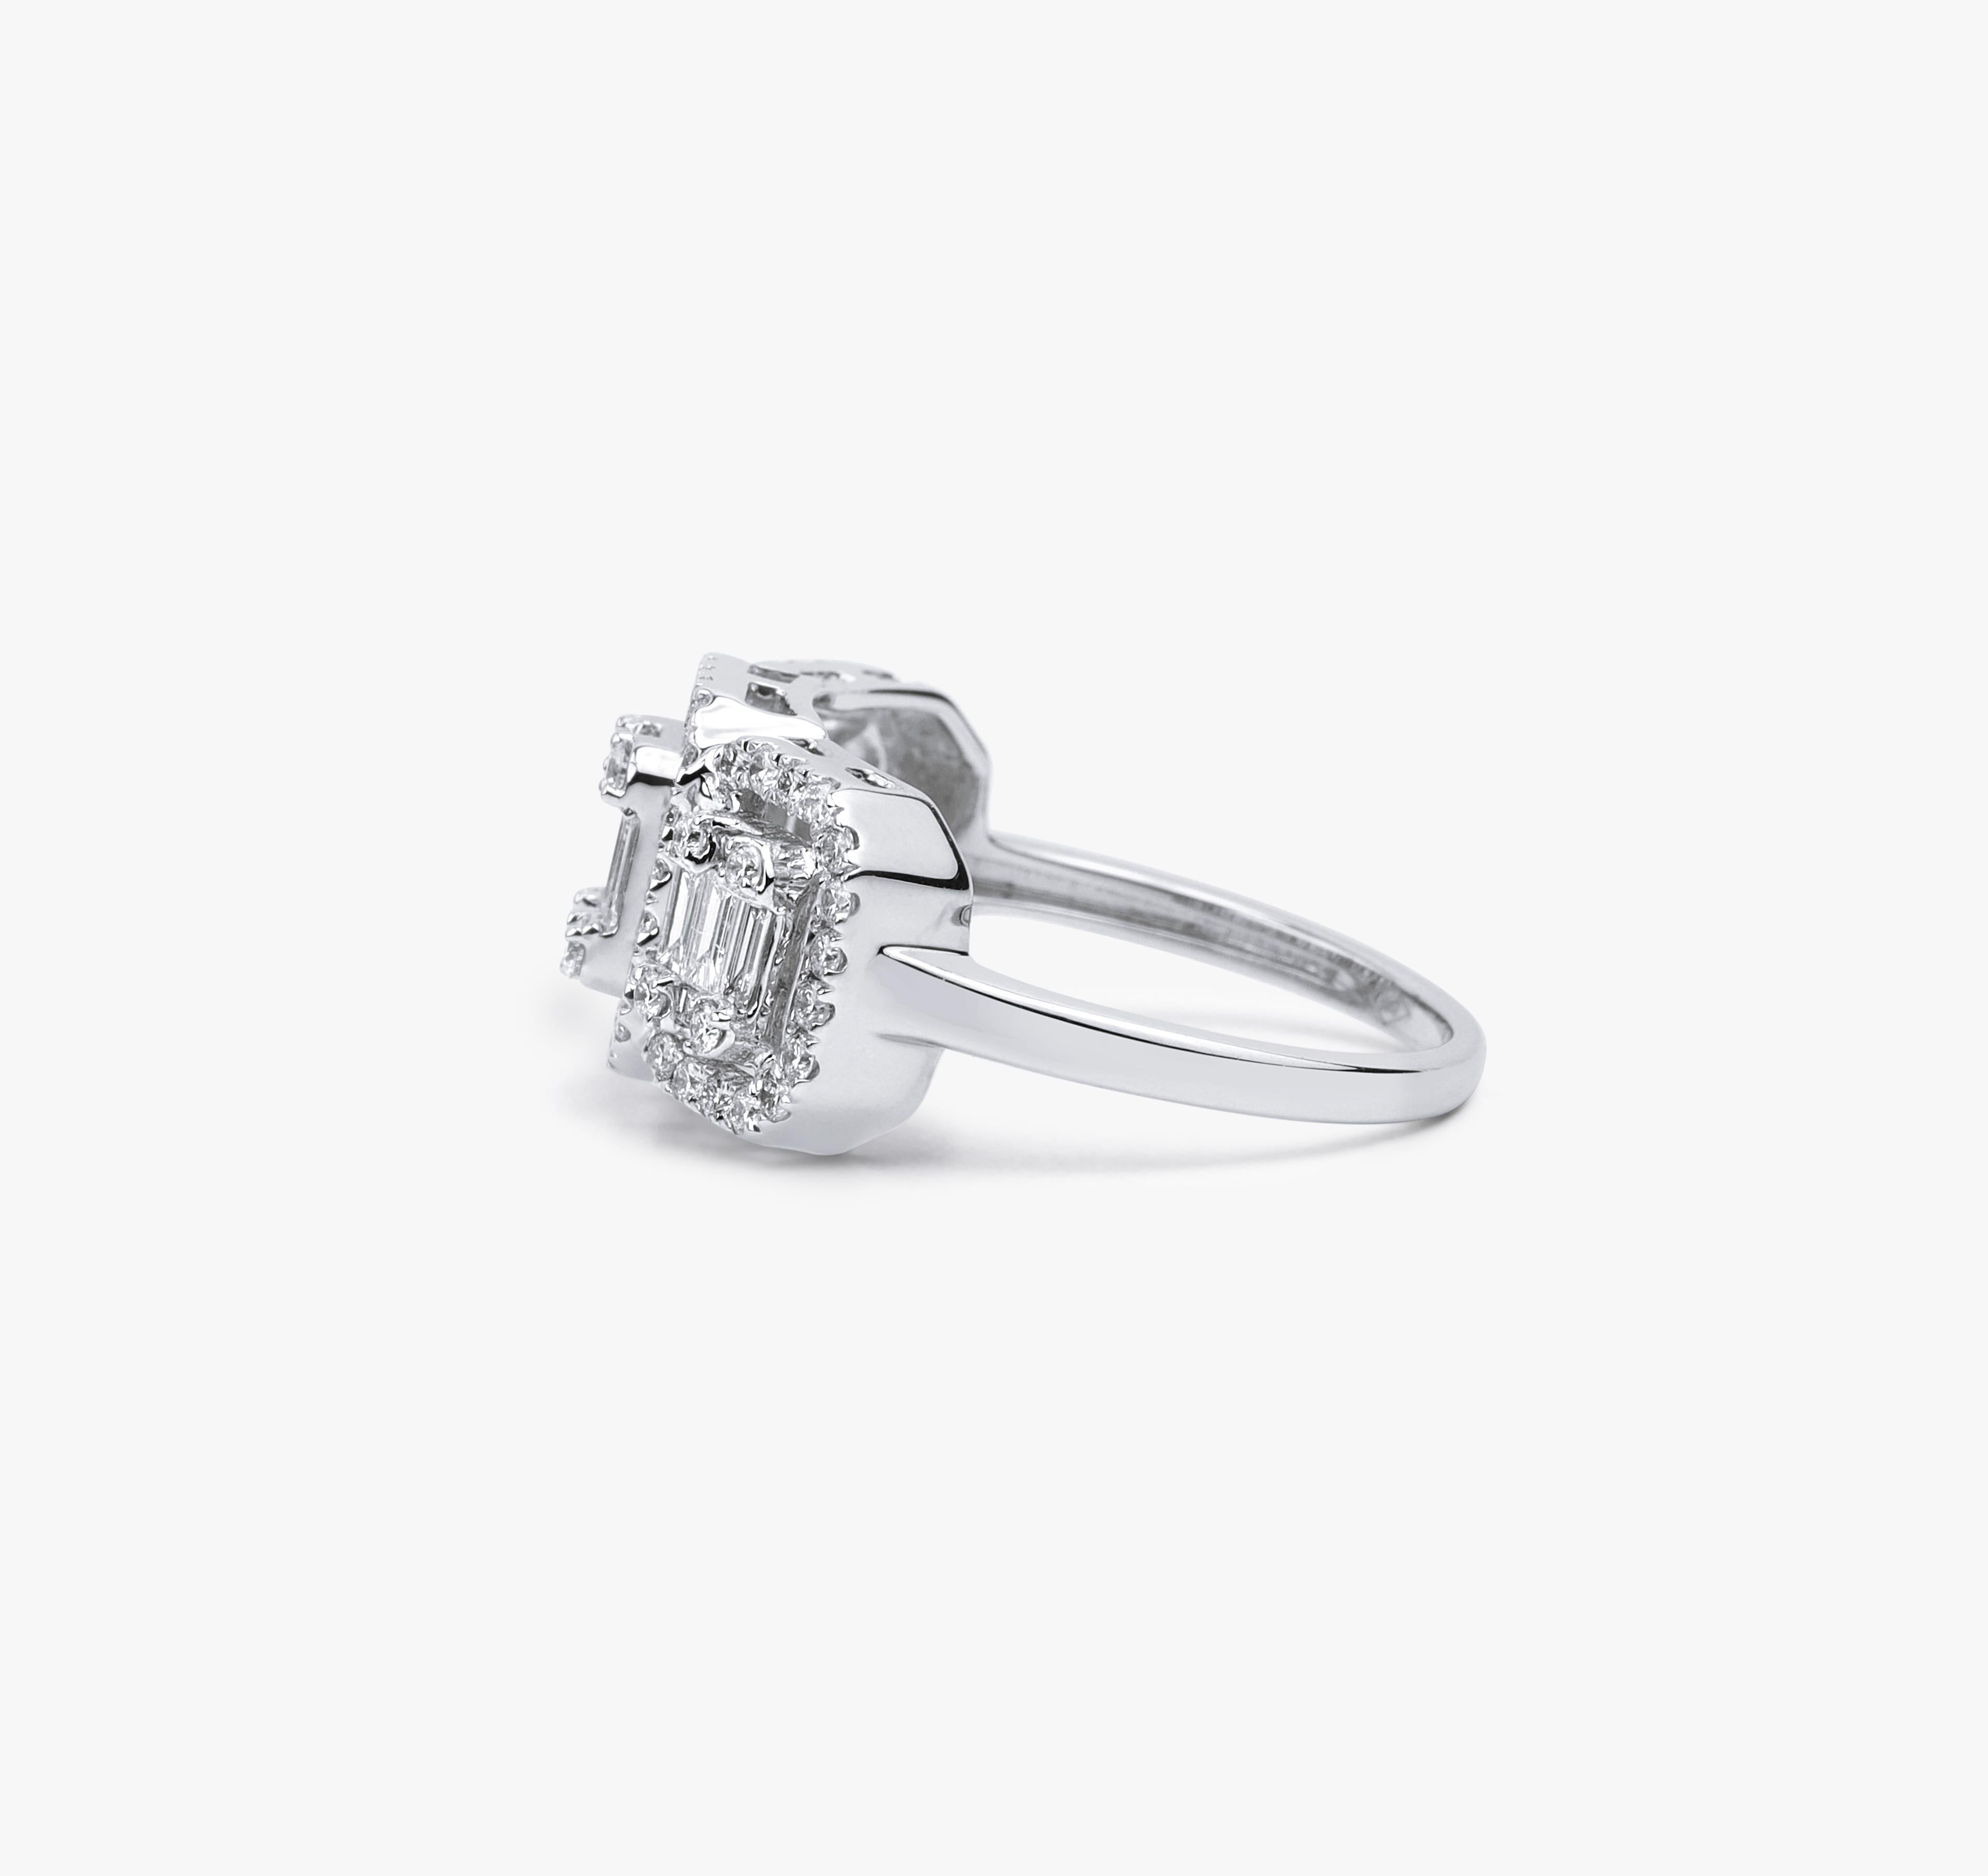 Art Deco Diamant Baguetteschliff Ring Illusion Einstellung, 1 TCW F G VS Diamant Ring


Erhältlich in 18 Karat Weißgold.

Das gleiche Design kann auch mit anderen Edelsteinen auf Anfrage hergestellt werden.

Einzelheiten zum Produkt:

- Massives